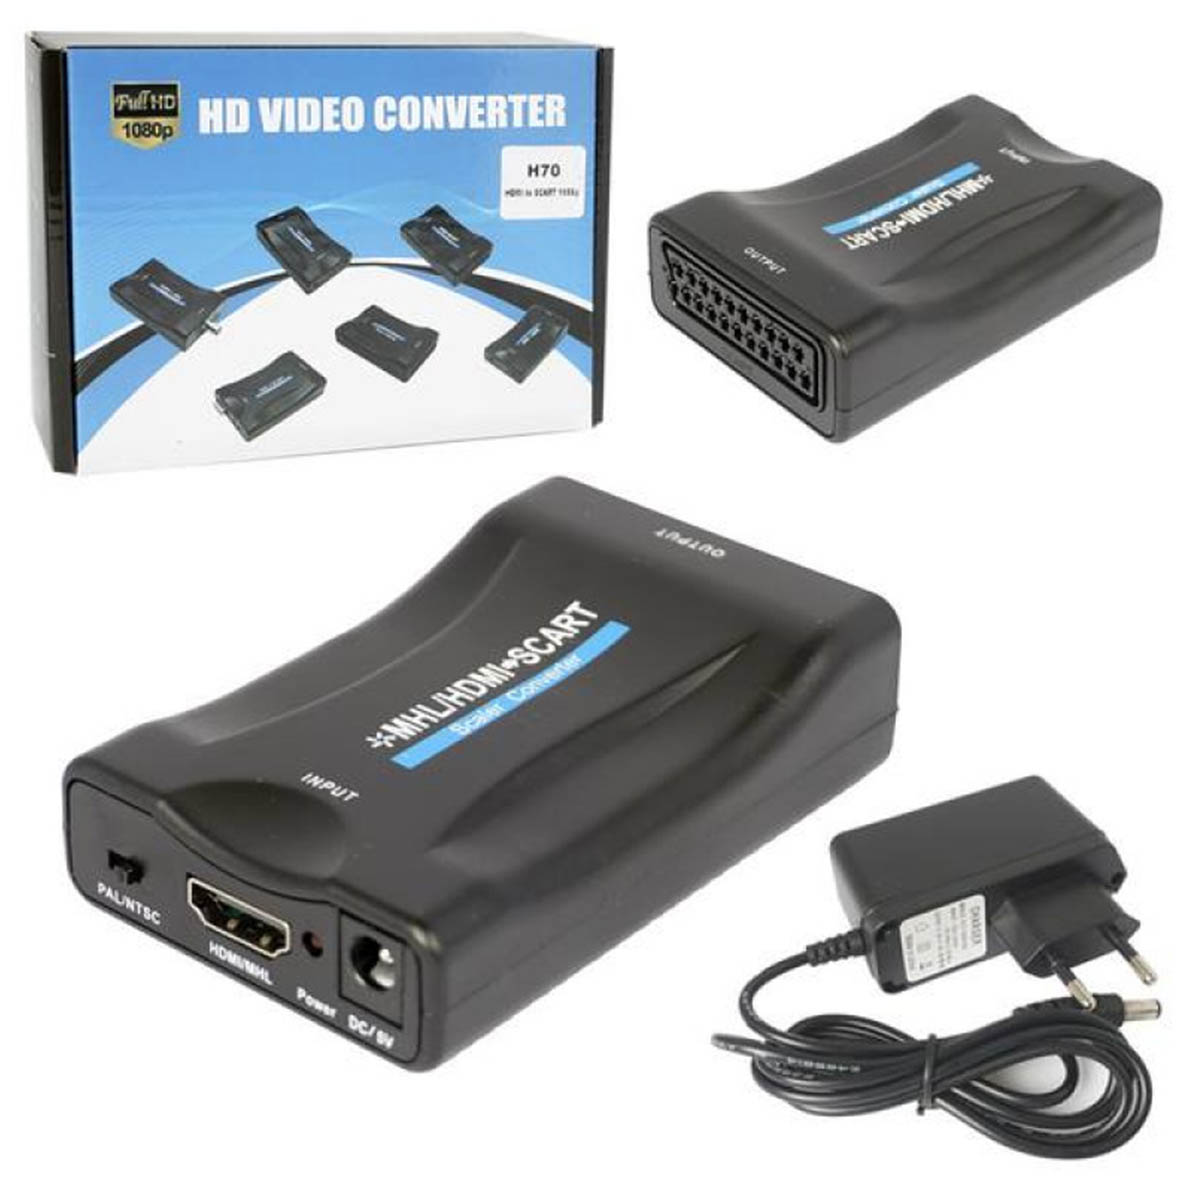 Переходник, адаптер, конвертер H70 HDMI на SCART, дополнительное питание 5V, цвет черный